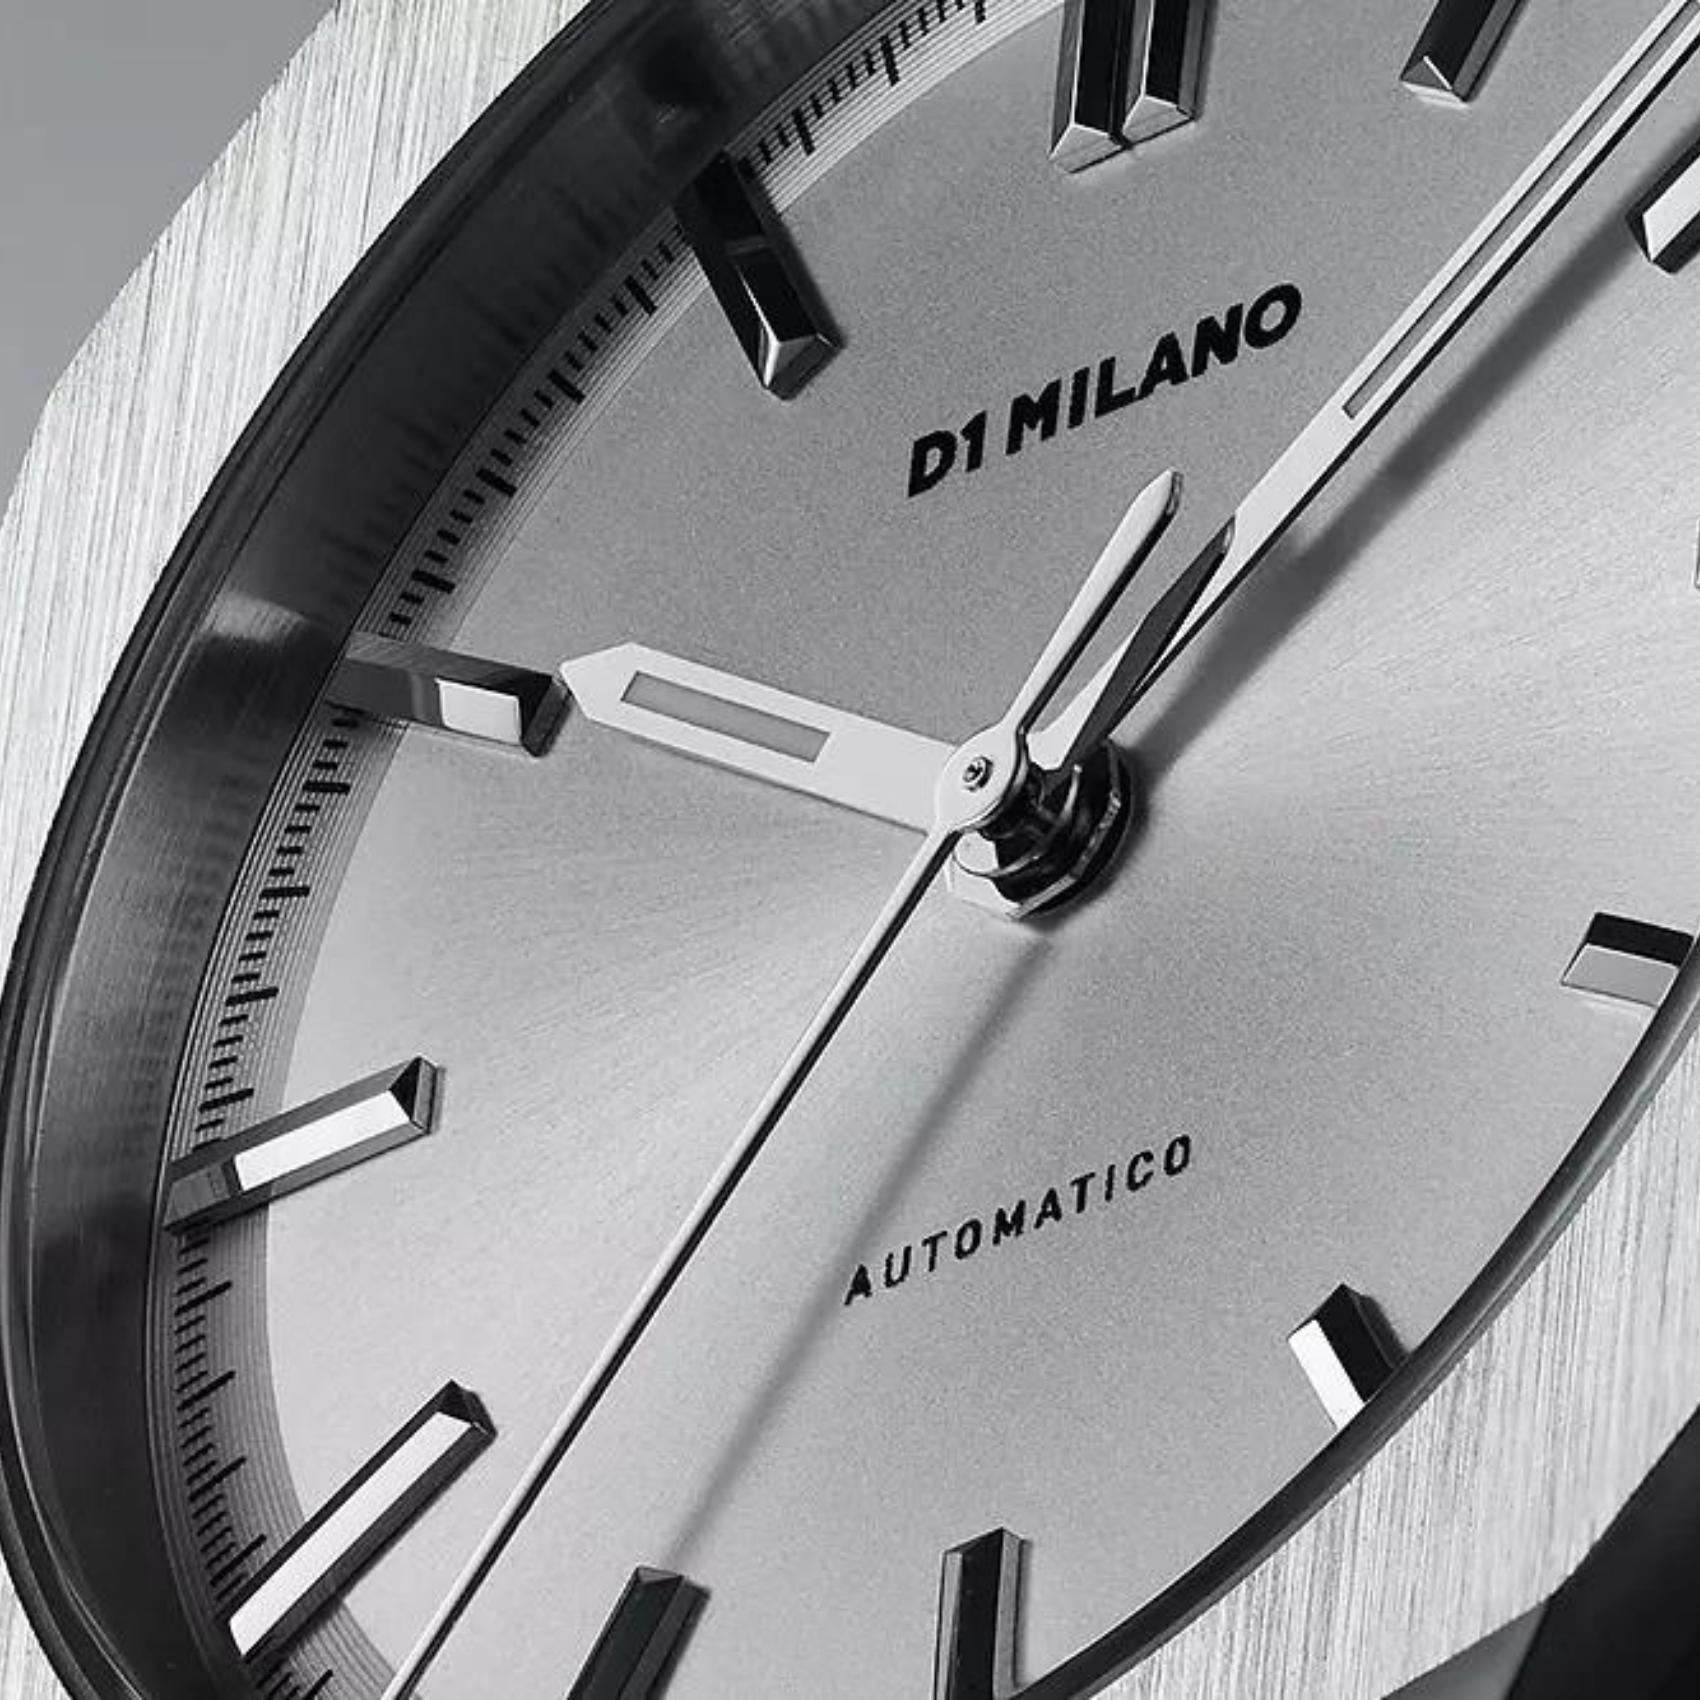 Αυτόματο ρολόι D1 Milano Antique Code D1-ATBU01 με ασημί ατσάλινο μπρασελέ και ασημί καντράν διαμέτρου 36mm.